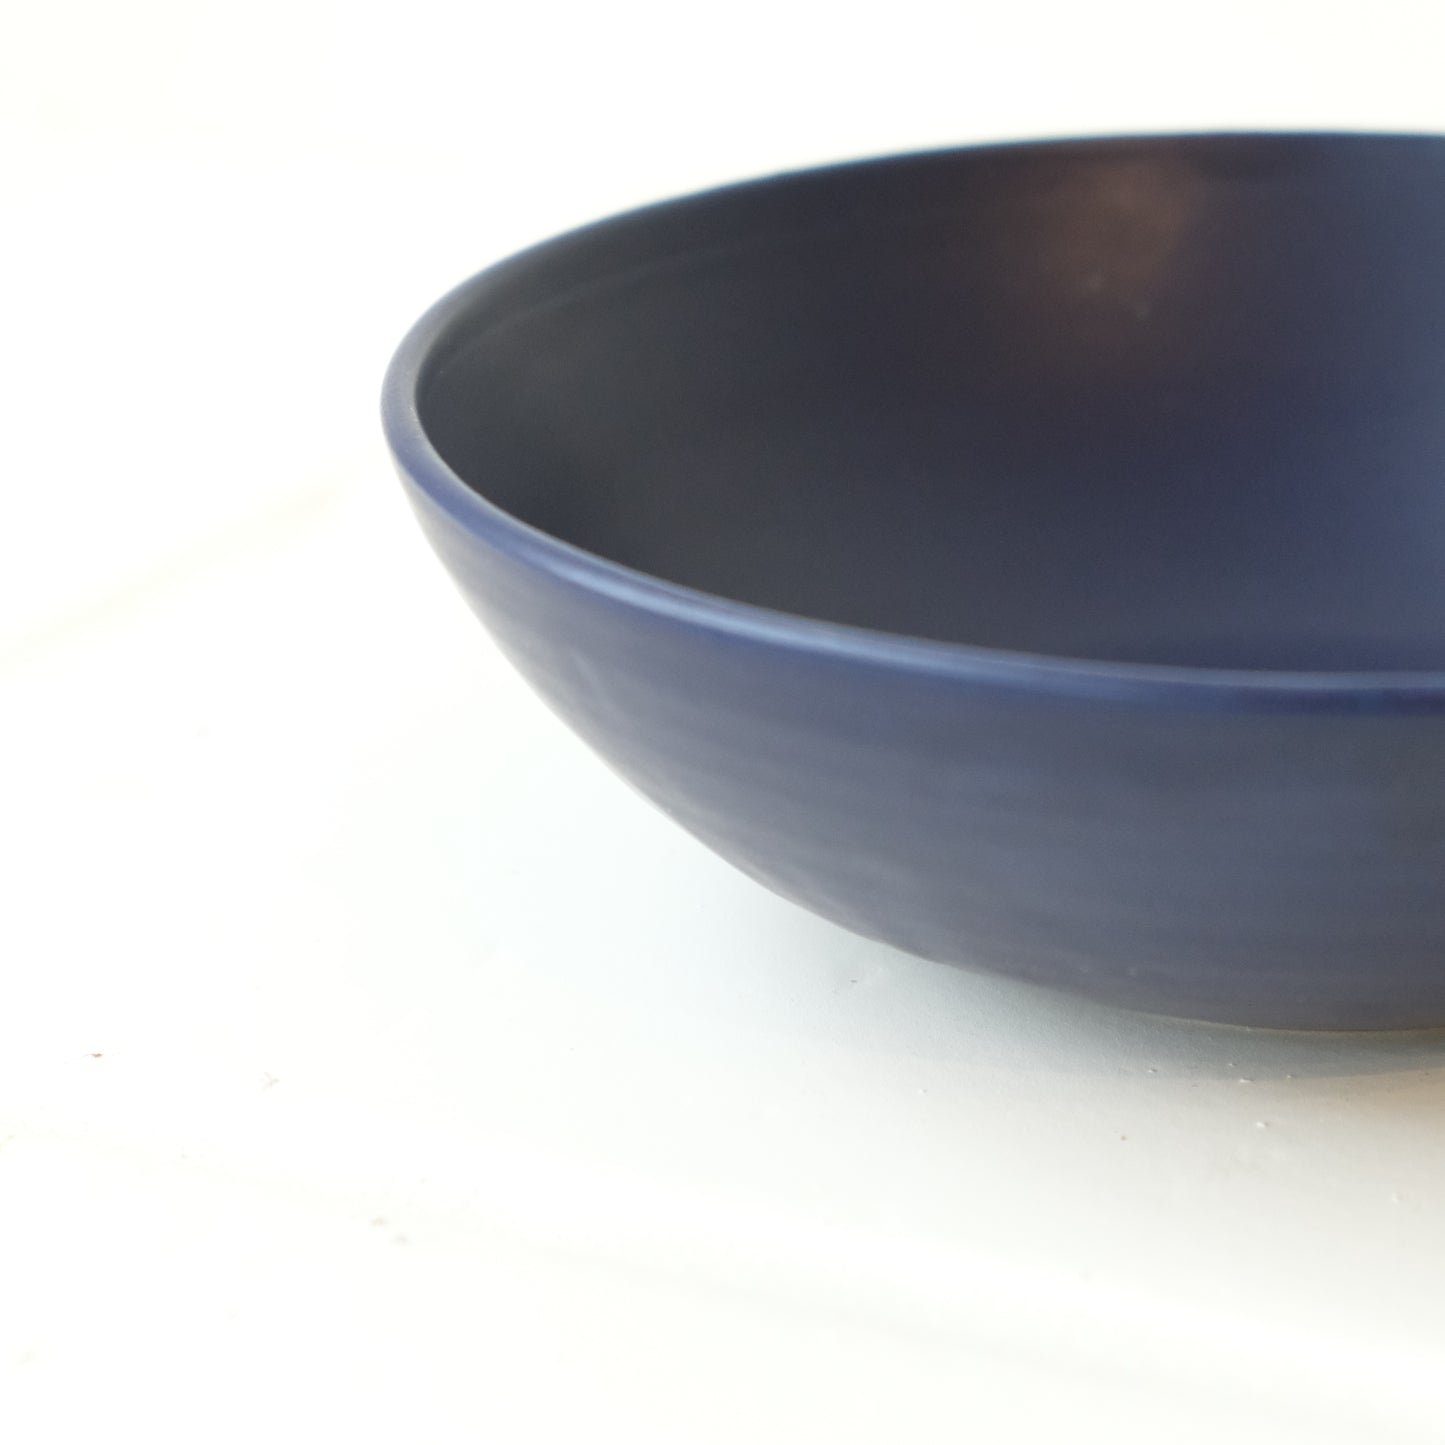 Rikizo Bowl Blue